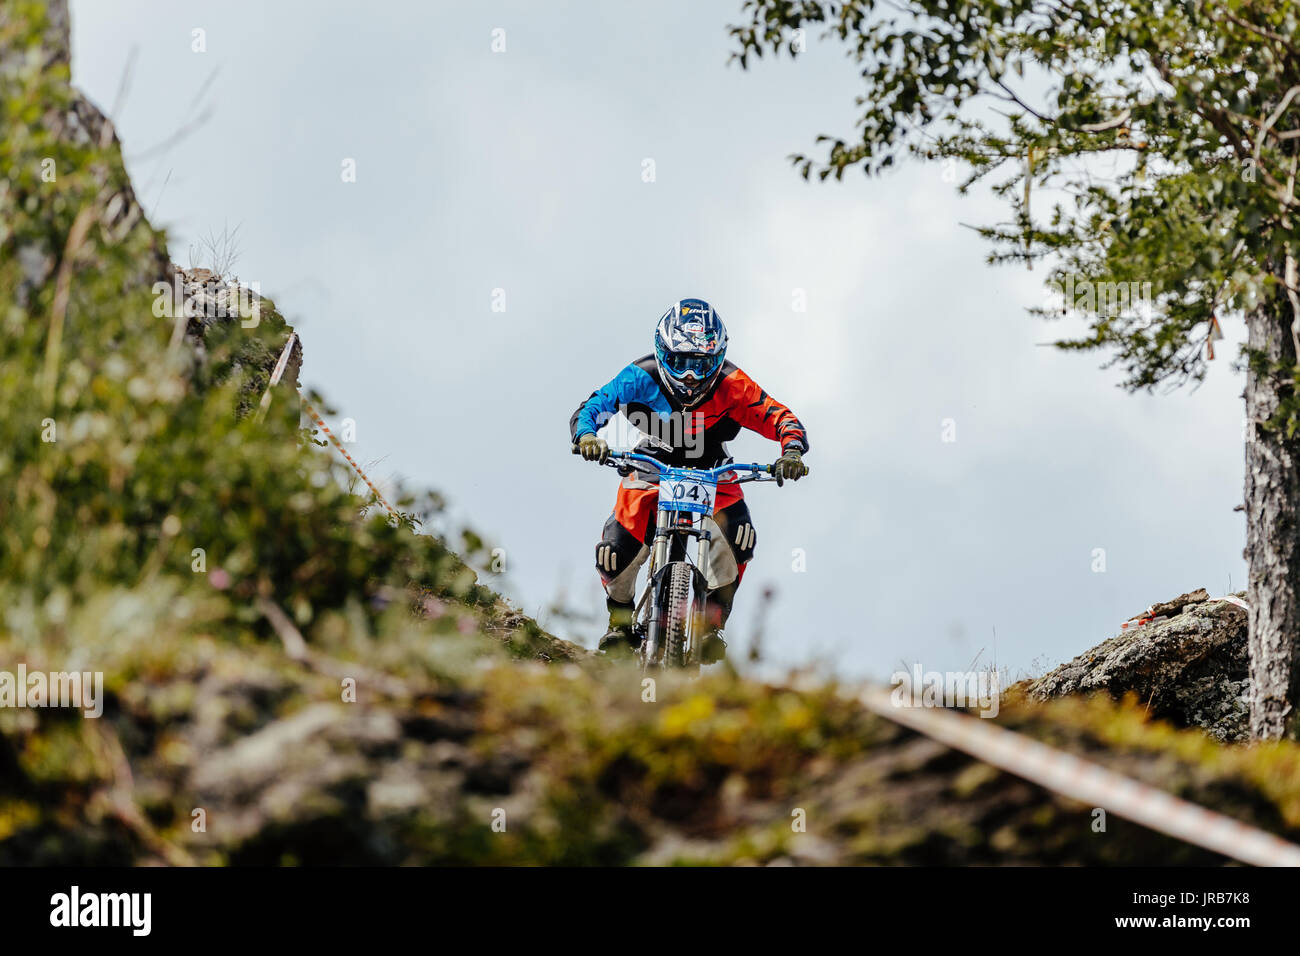 Mann rider downhill Fahrrad auf einem Berg trail während der nationalen Meisterschaft Downhill Stockfoto